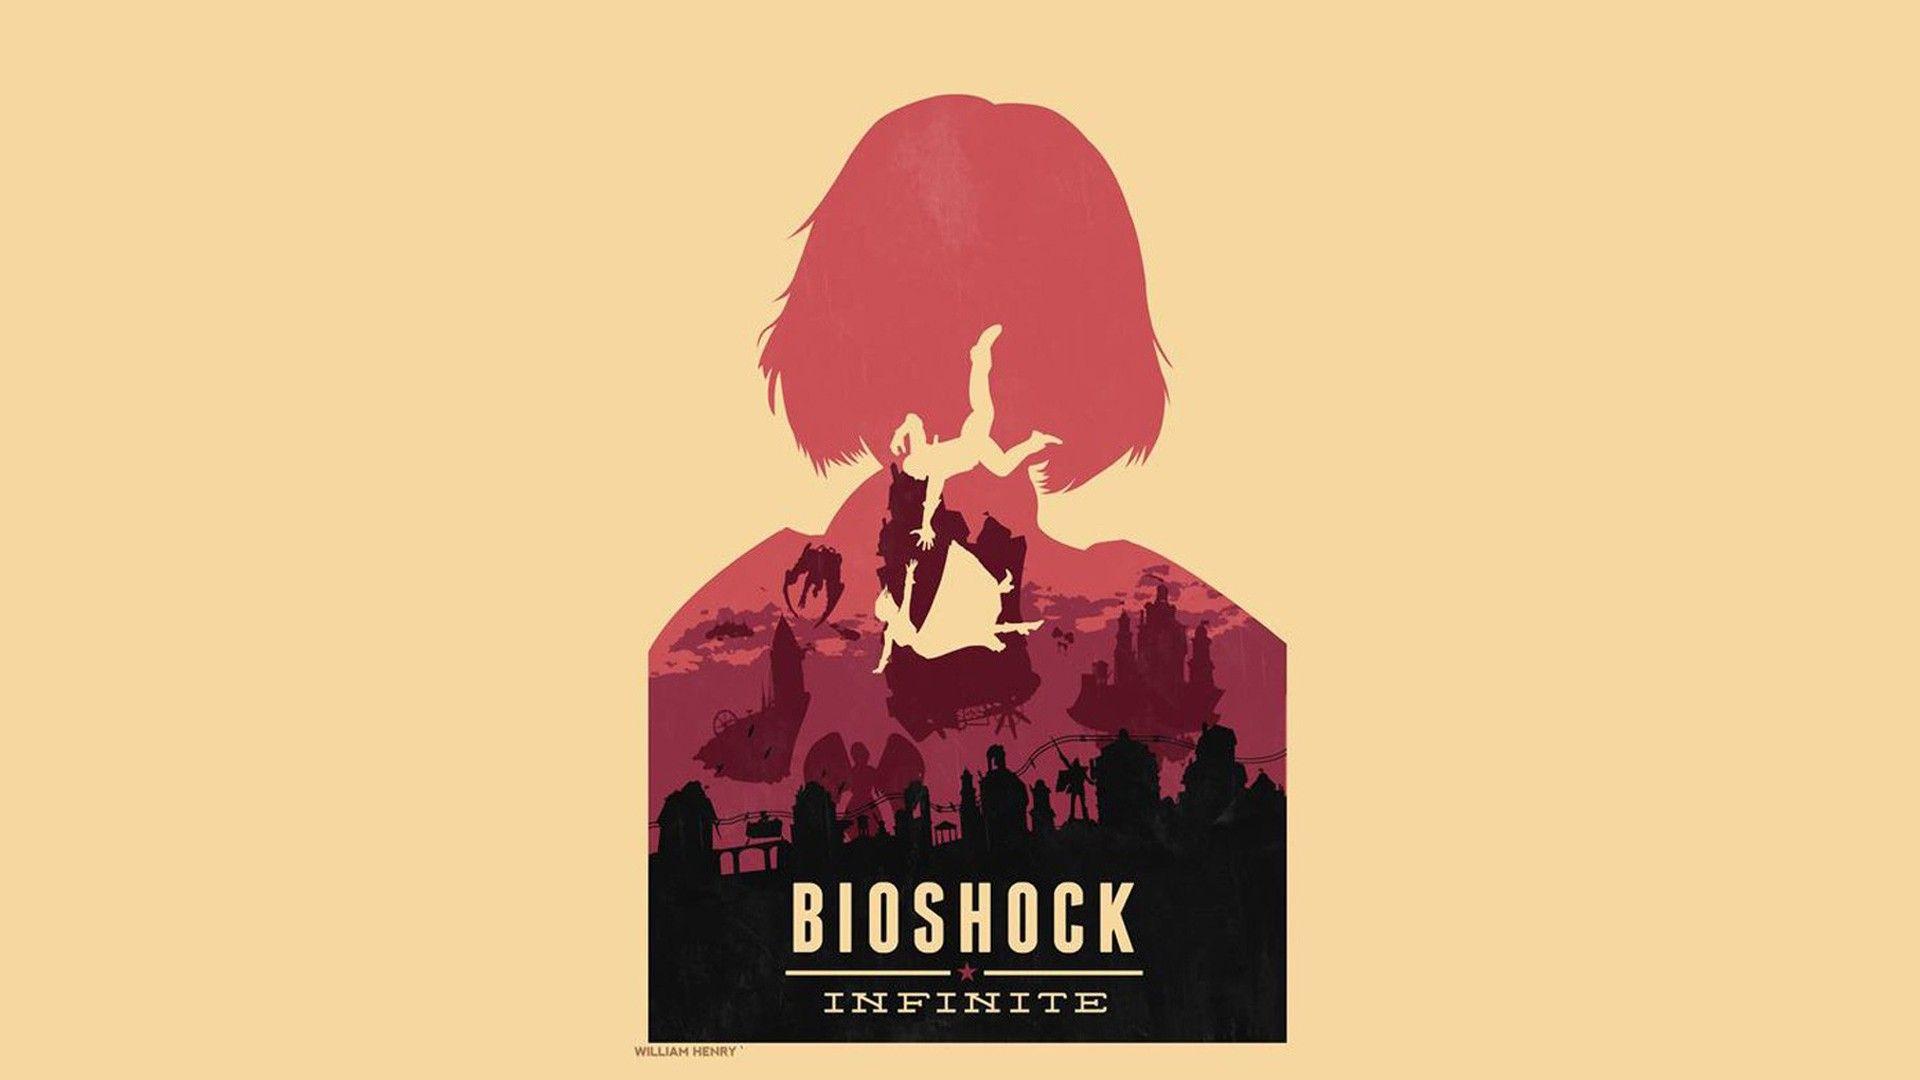 Bioshock Infinite Wallpaper. Bioshock Infinite Background